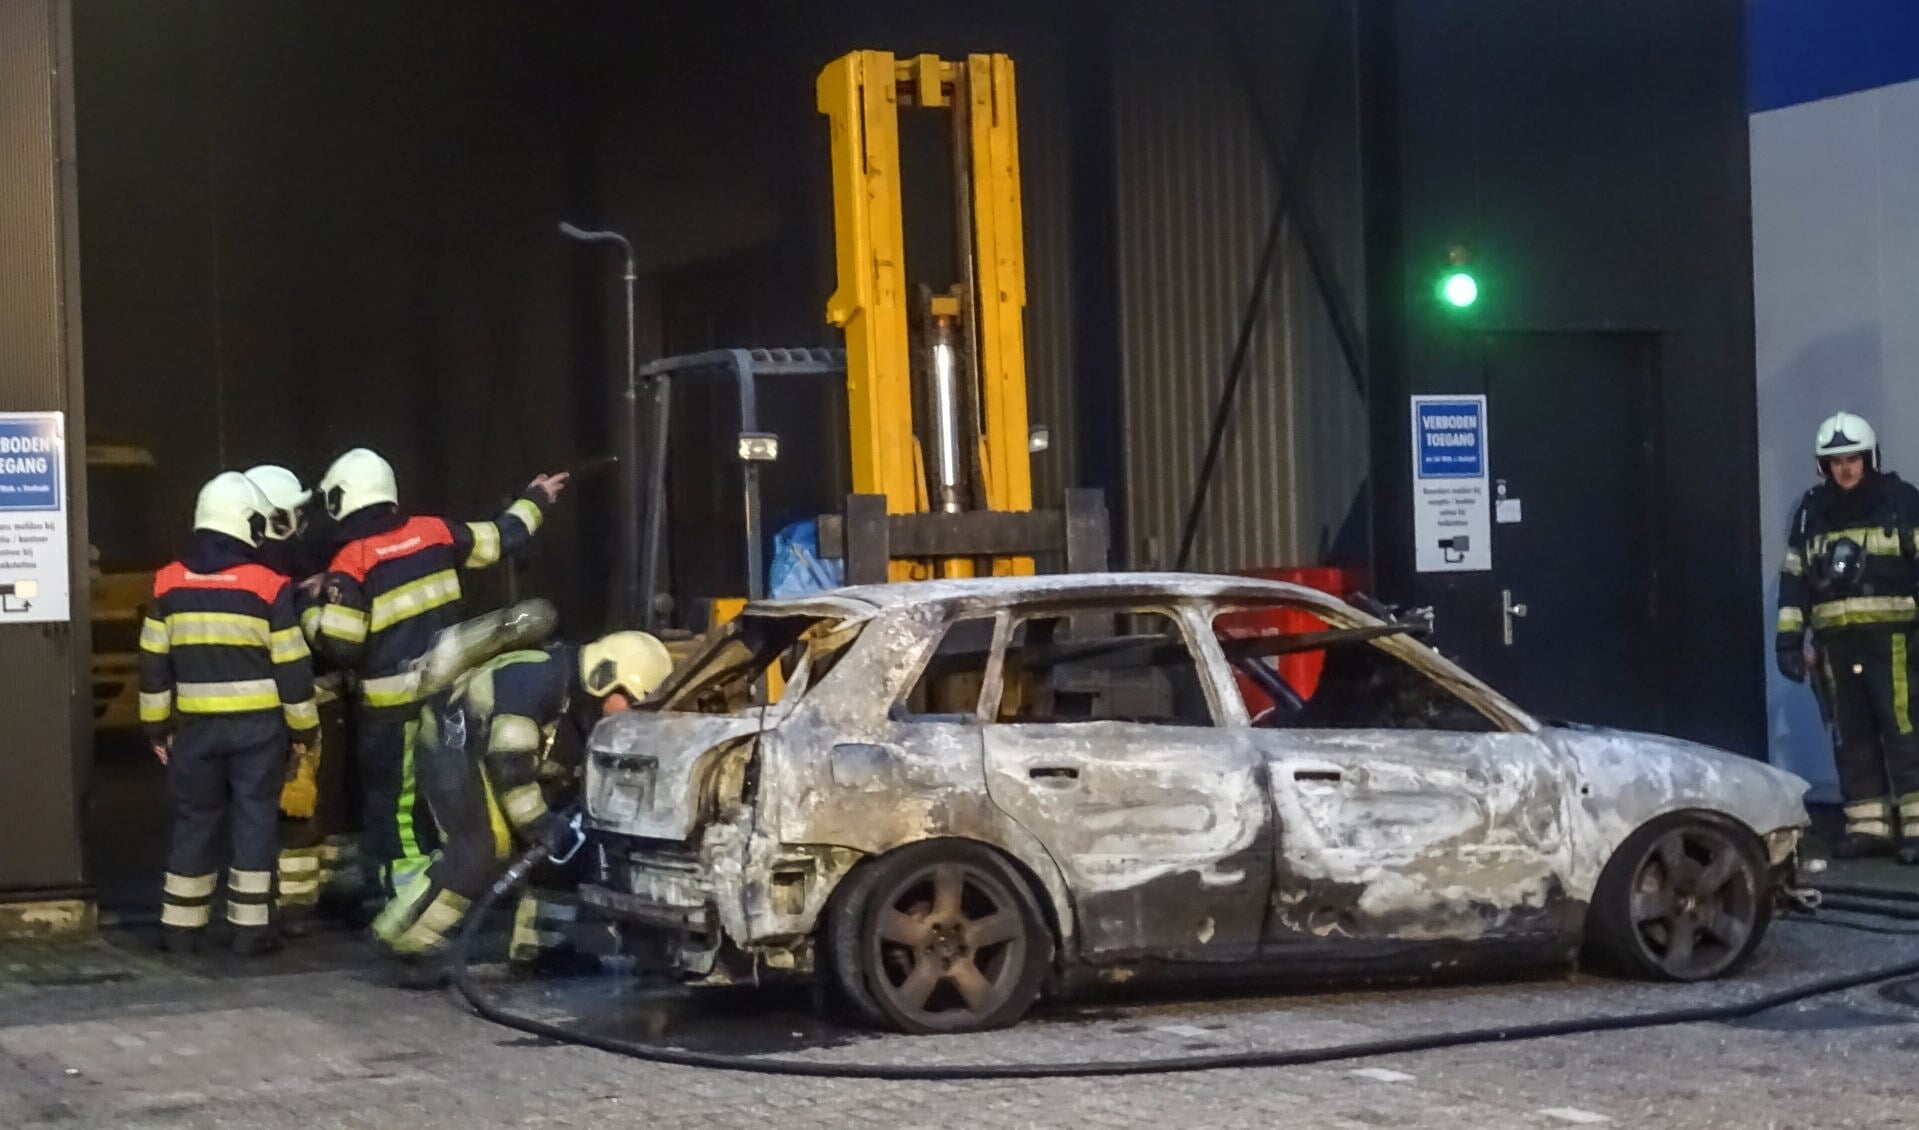 De uitgebrande auto in Oss. (Foto: Maickel Keijzers / Hendriks Multimedia)